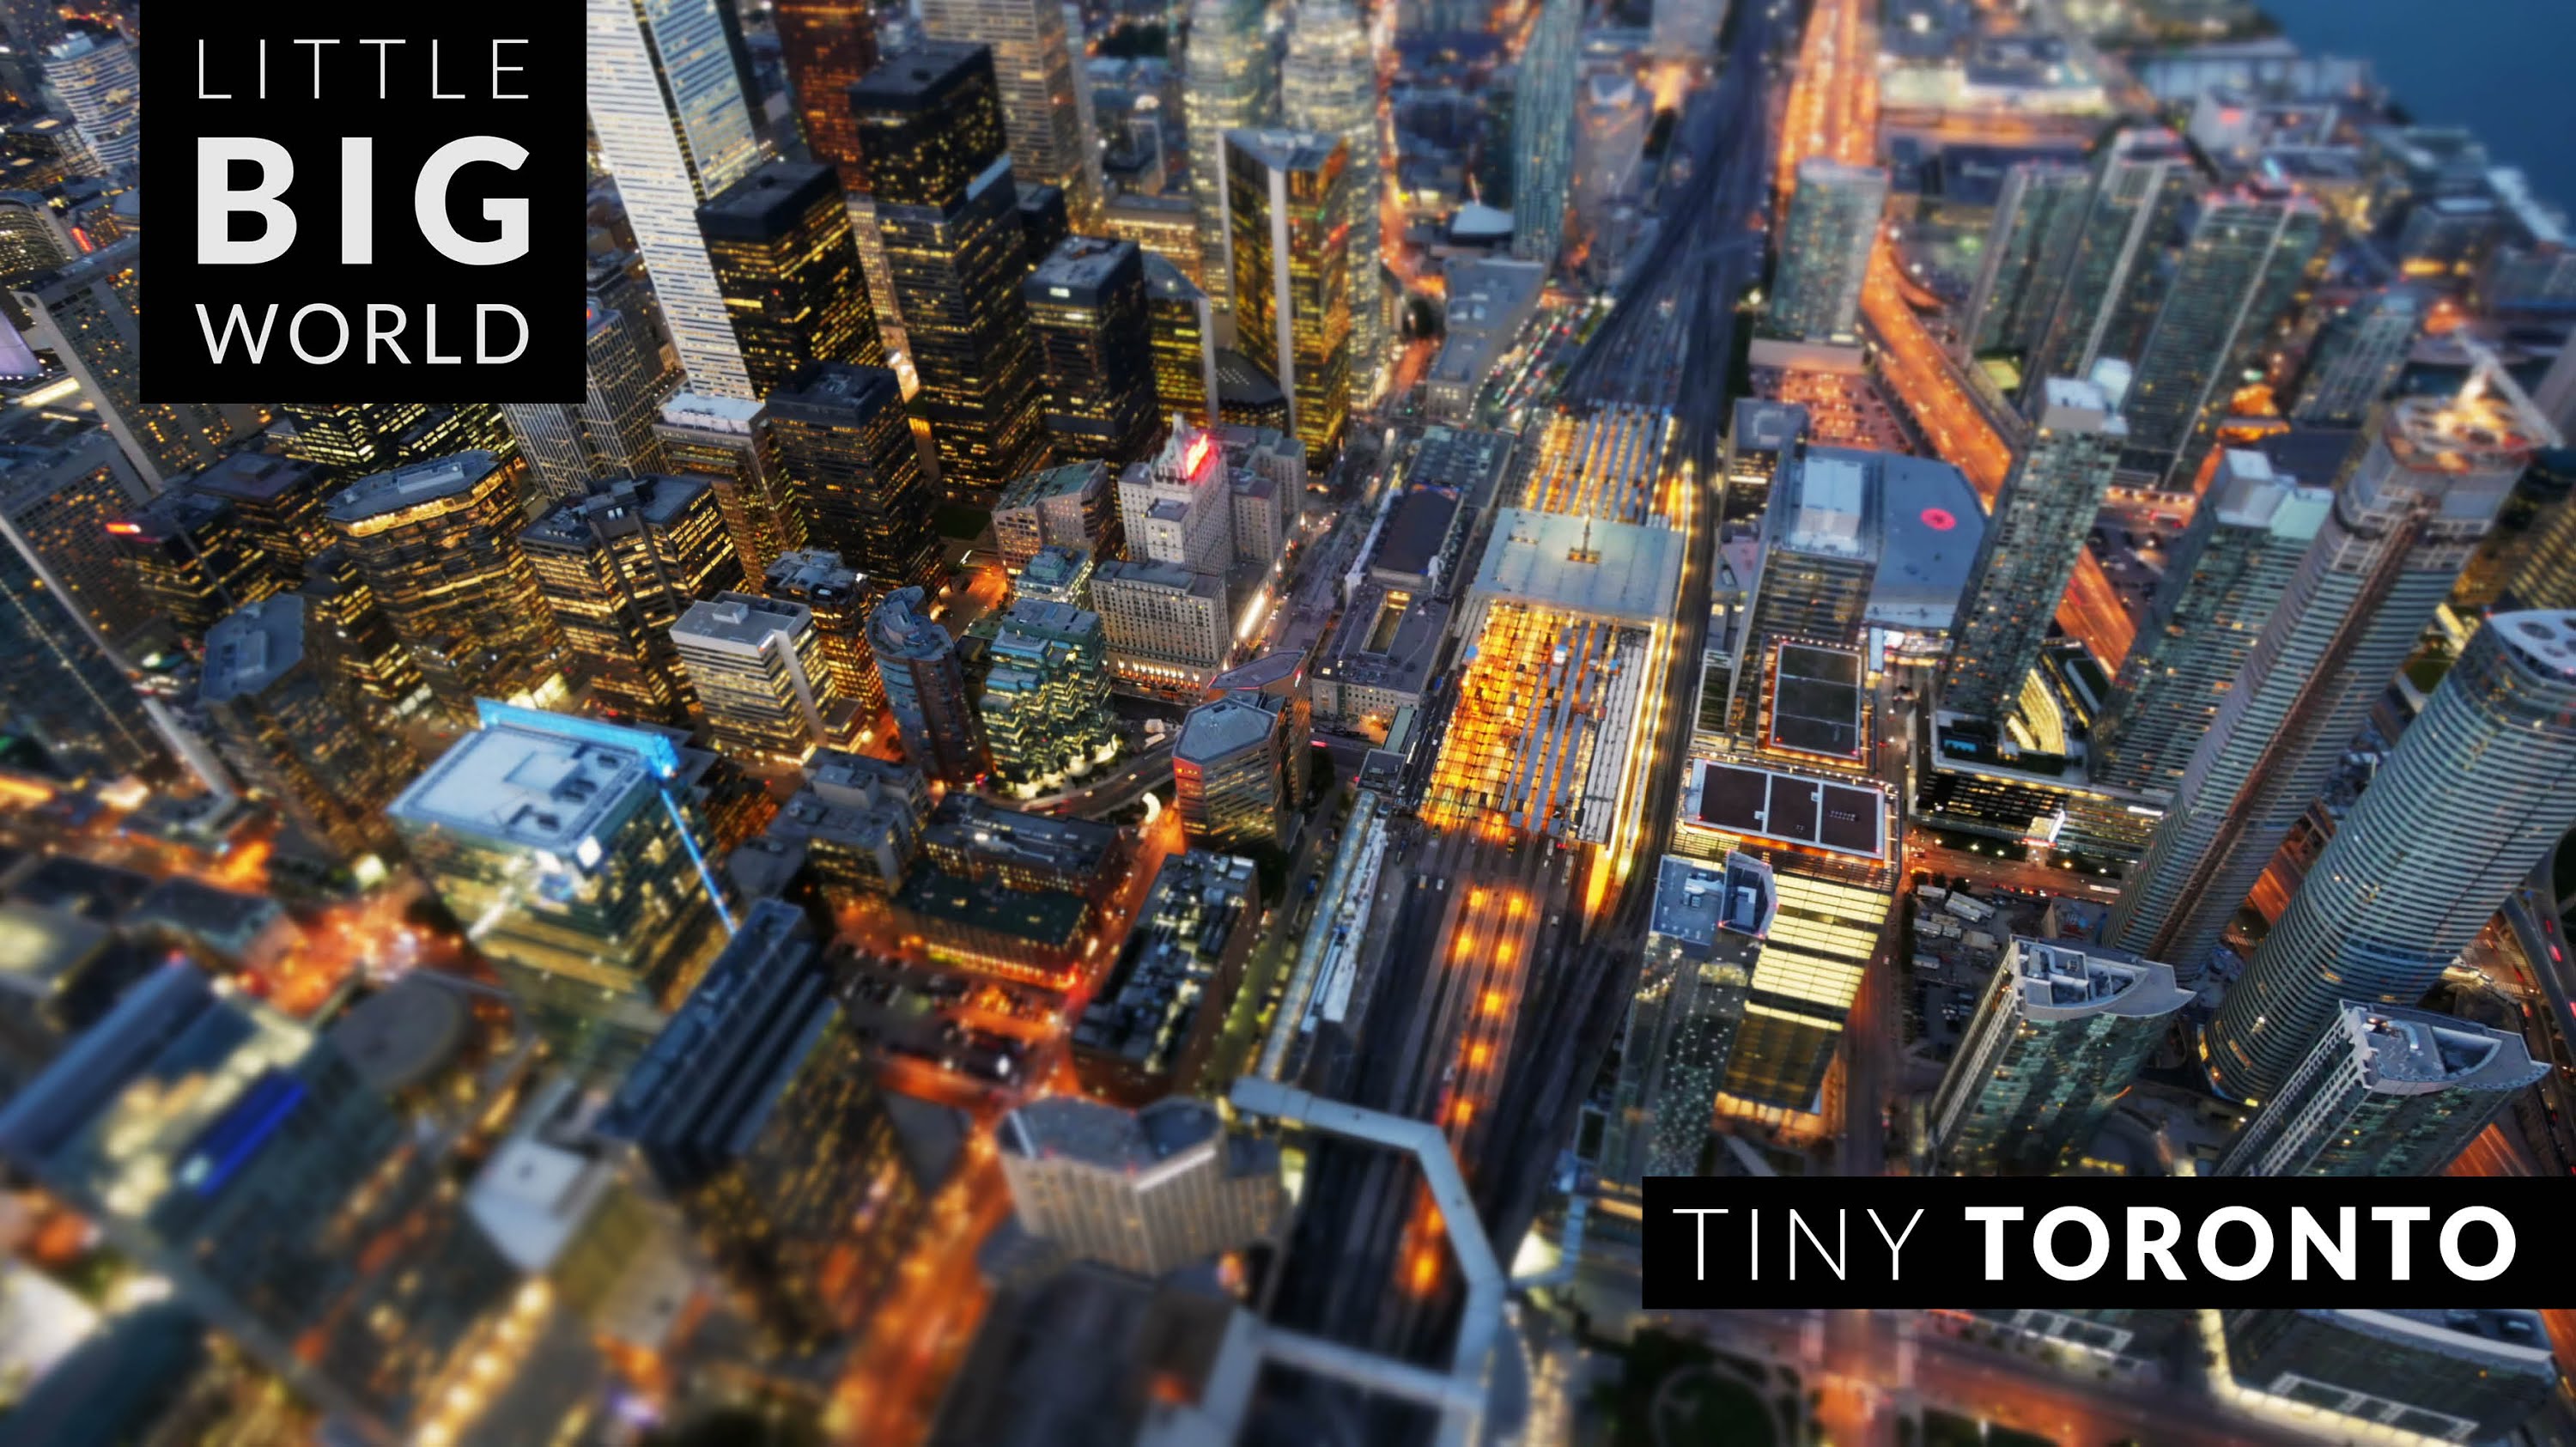 Tiny Toronto (Time Lapse - Tilt Shift - 4k) - YouTube